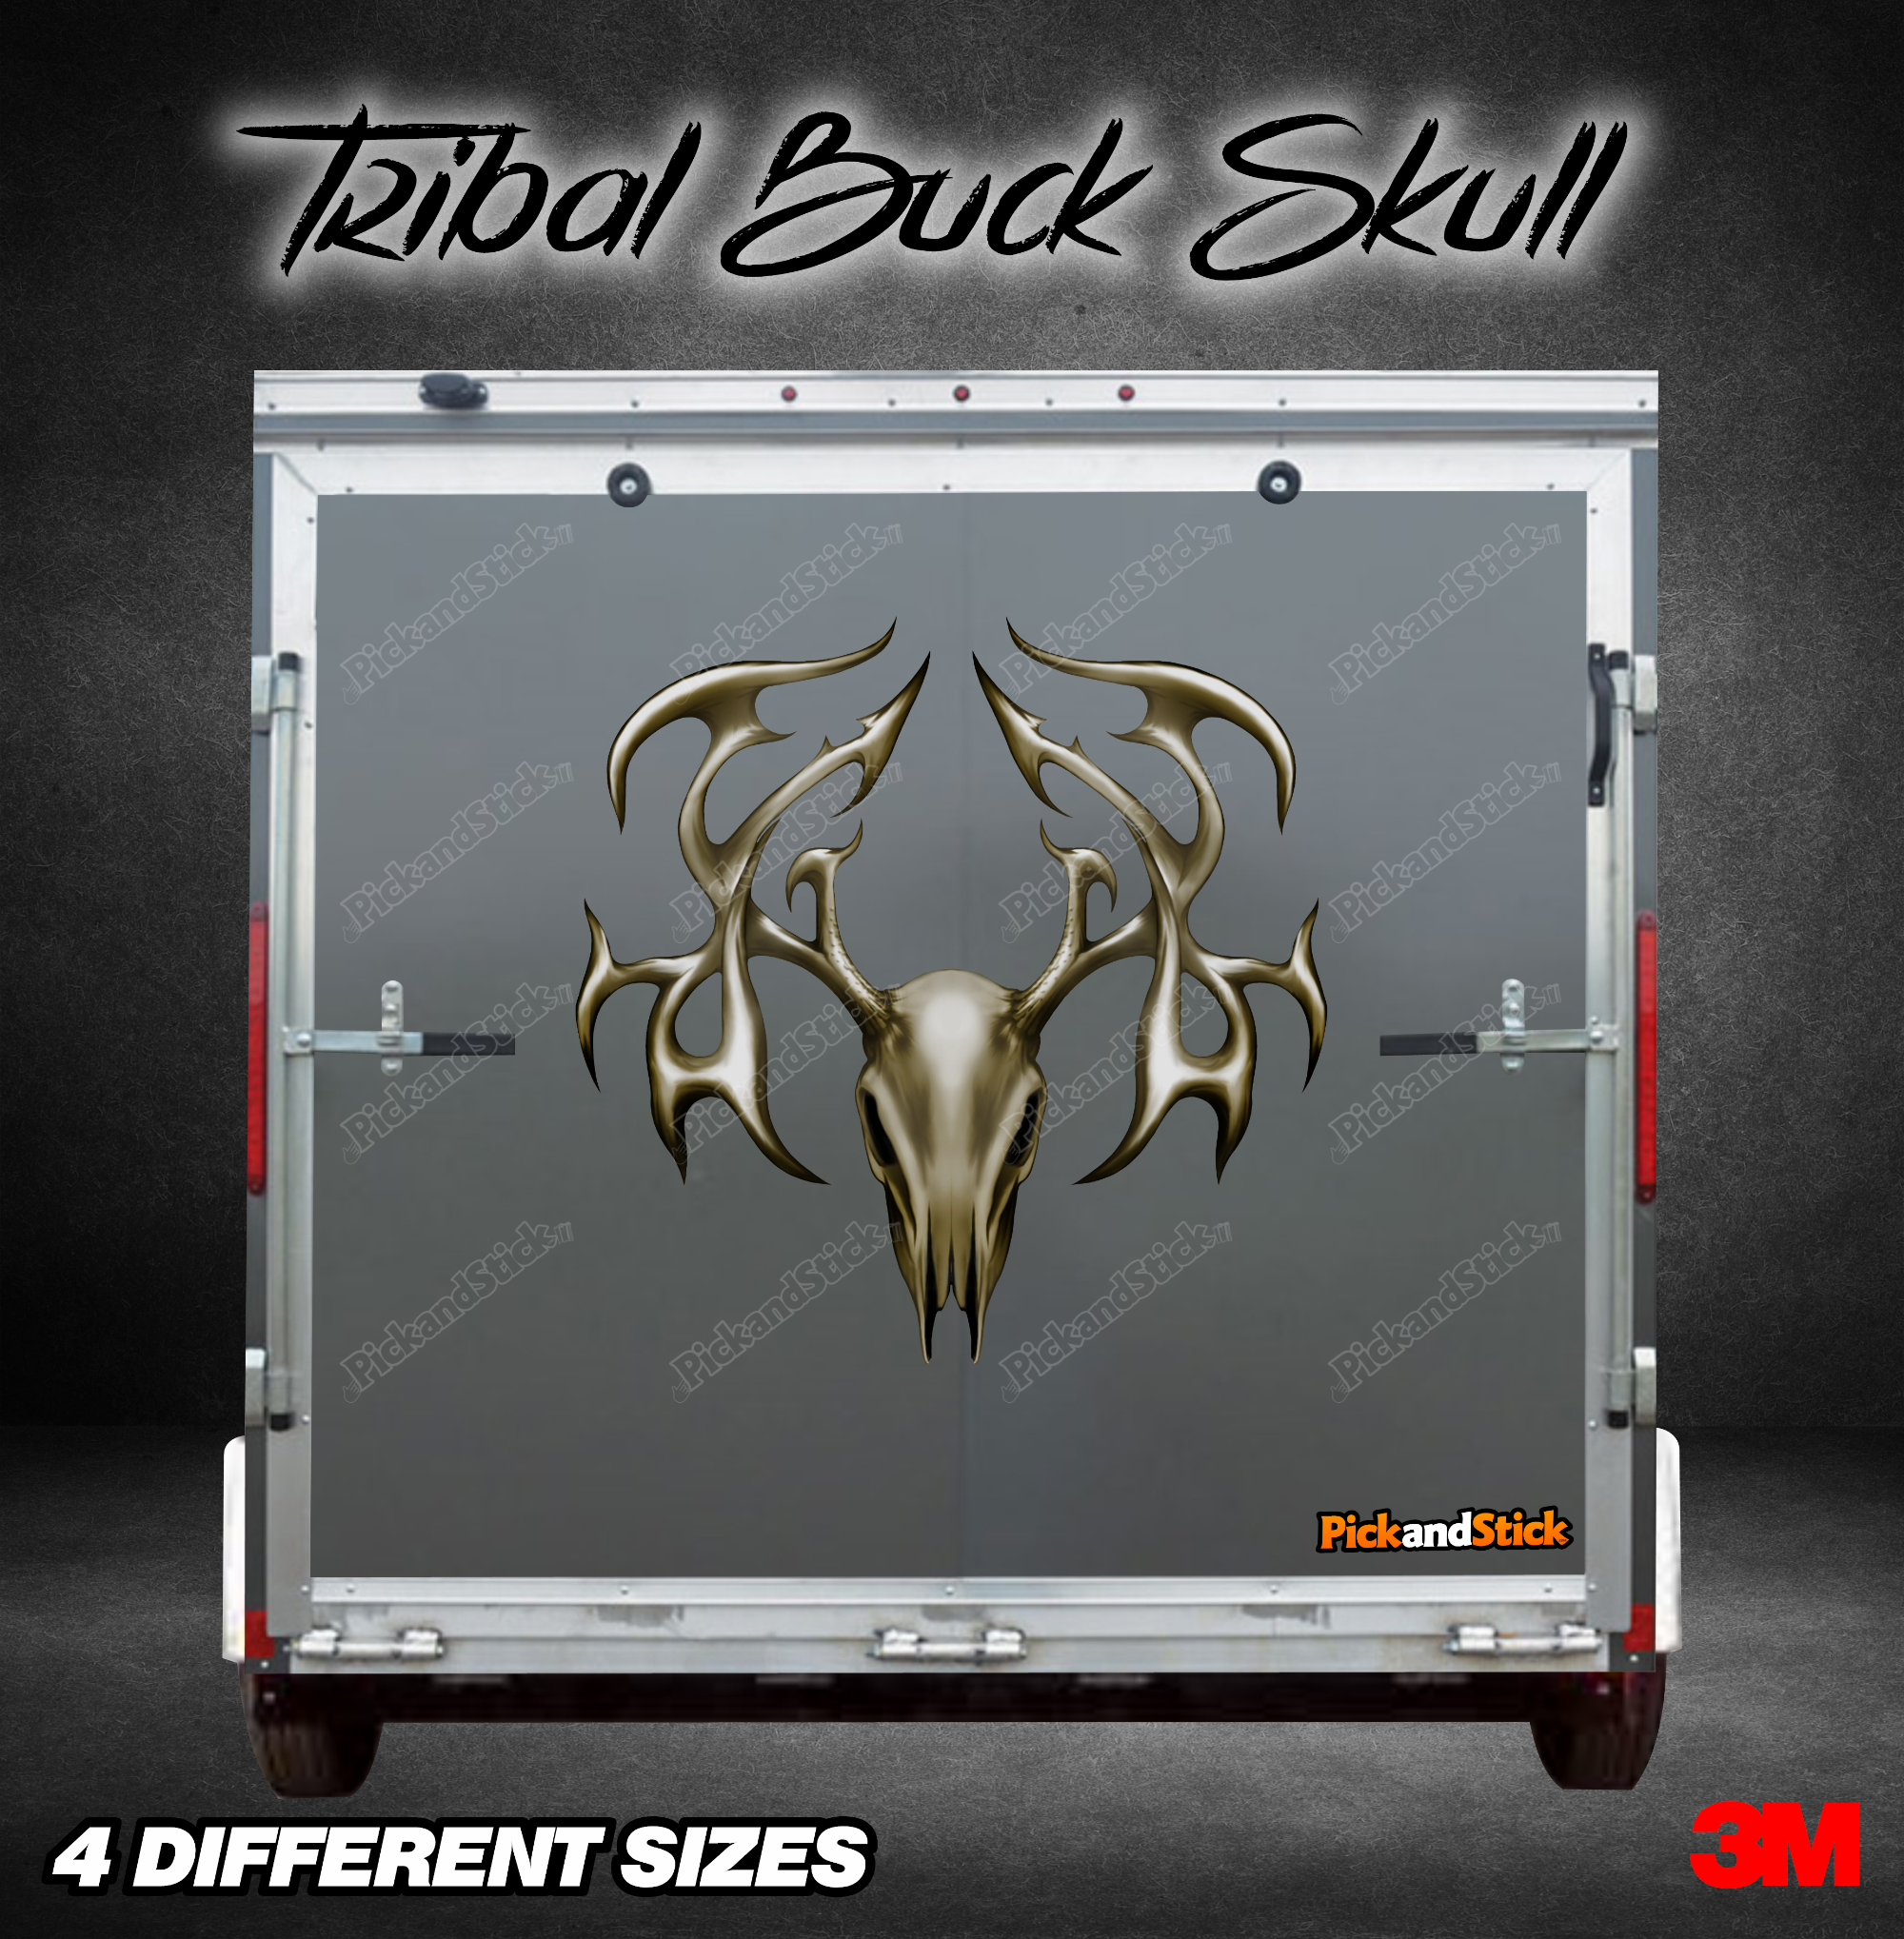 Tribal Buck Skull Trailer Graphic - PickandStickcom